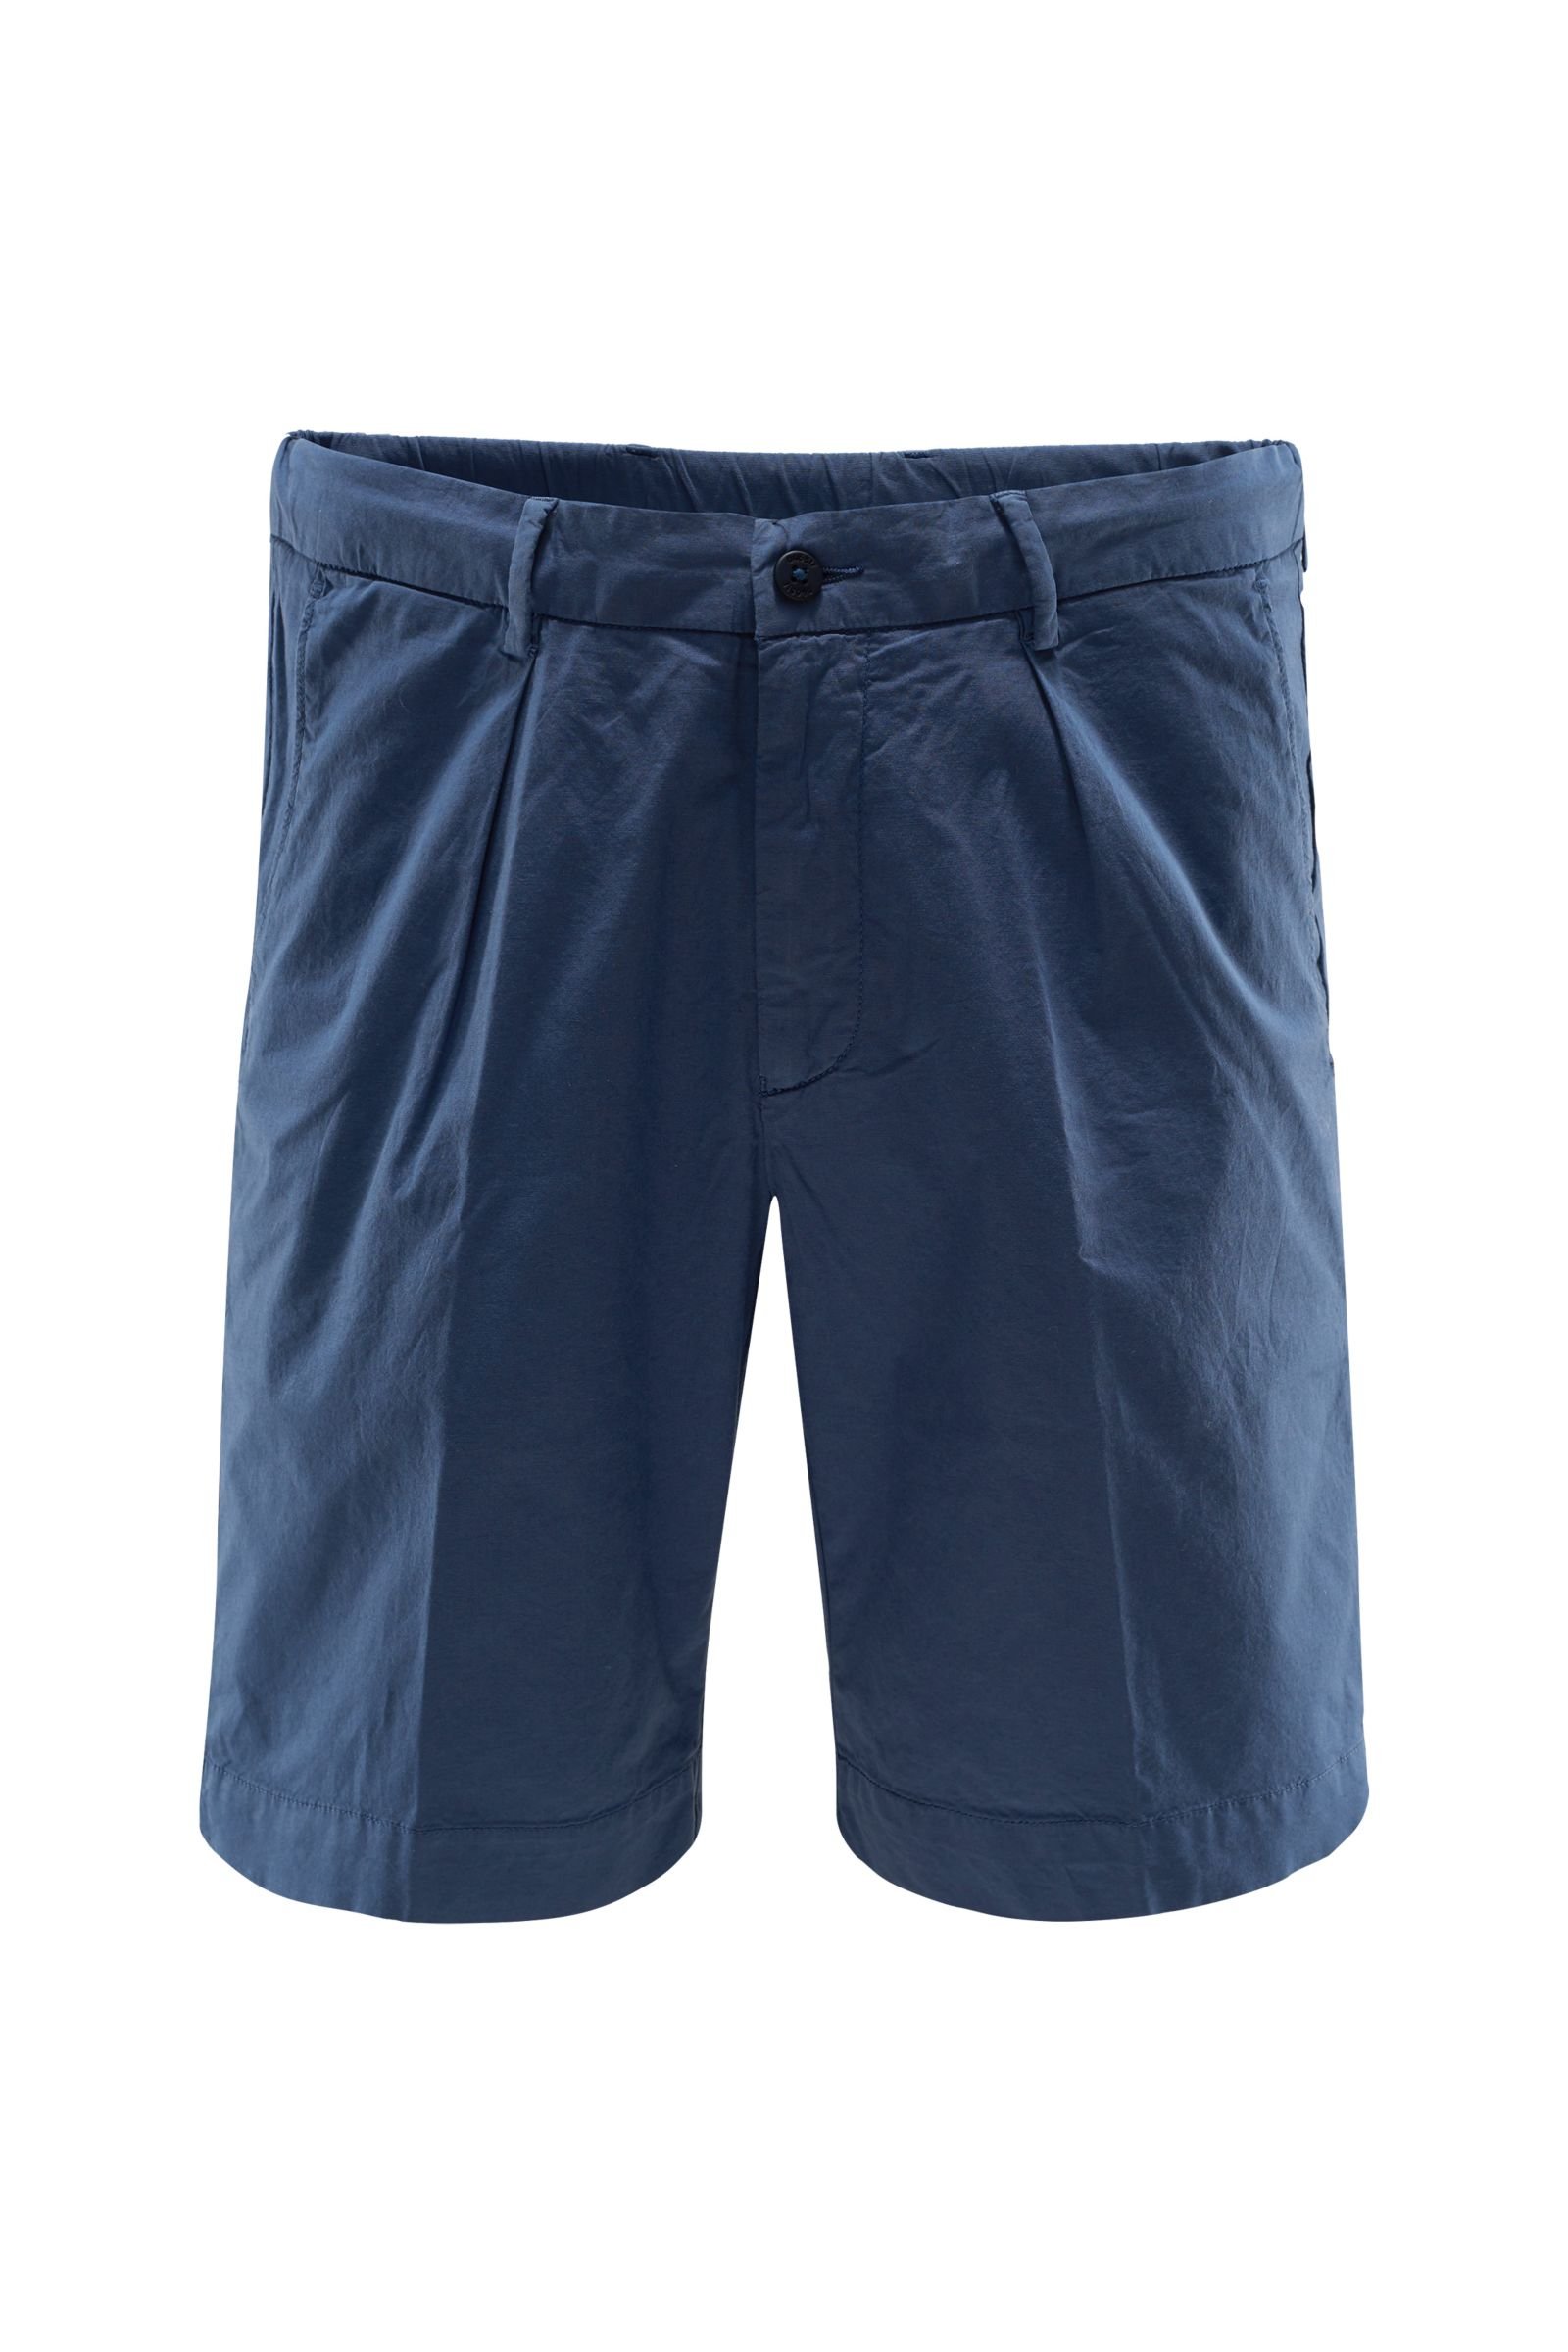 Bermuda shorts grey-blue